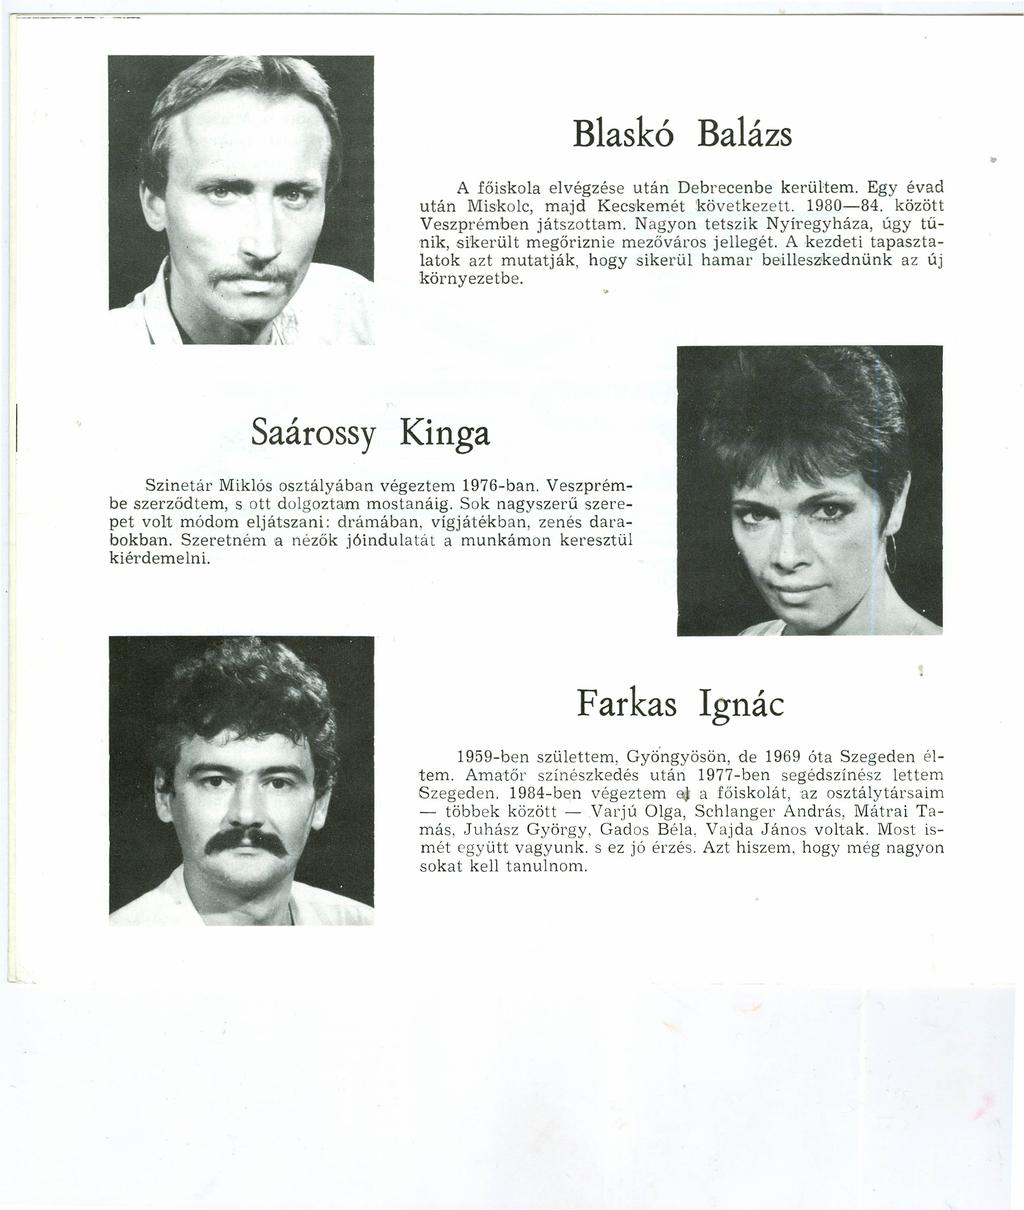 Blaskó Balázs A főiskola elvégzése után Debrecenbe kerültern. Egy évad után Miskolc, majd Kecskemét 'következett. 1980-84. között Veszprémben játszottam.